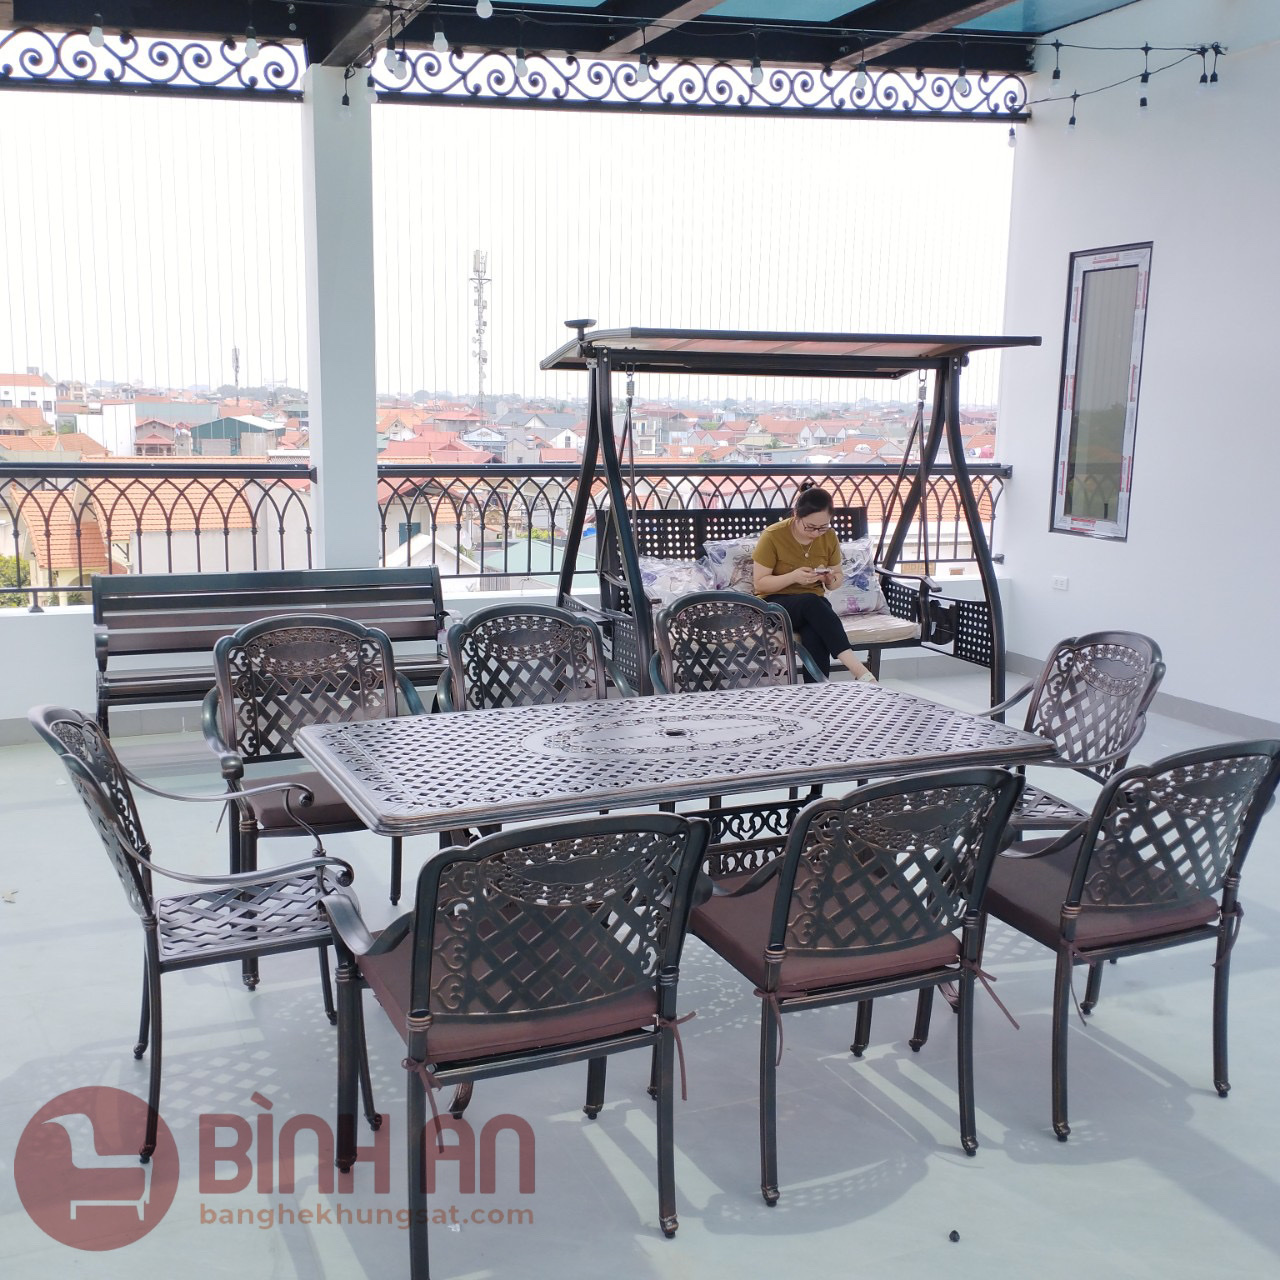 Giao hàng thành công 3 sản phẩm bàn ghế sân vườn ngoài trời cho khách hàng tại Long Biên